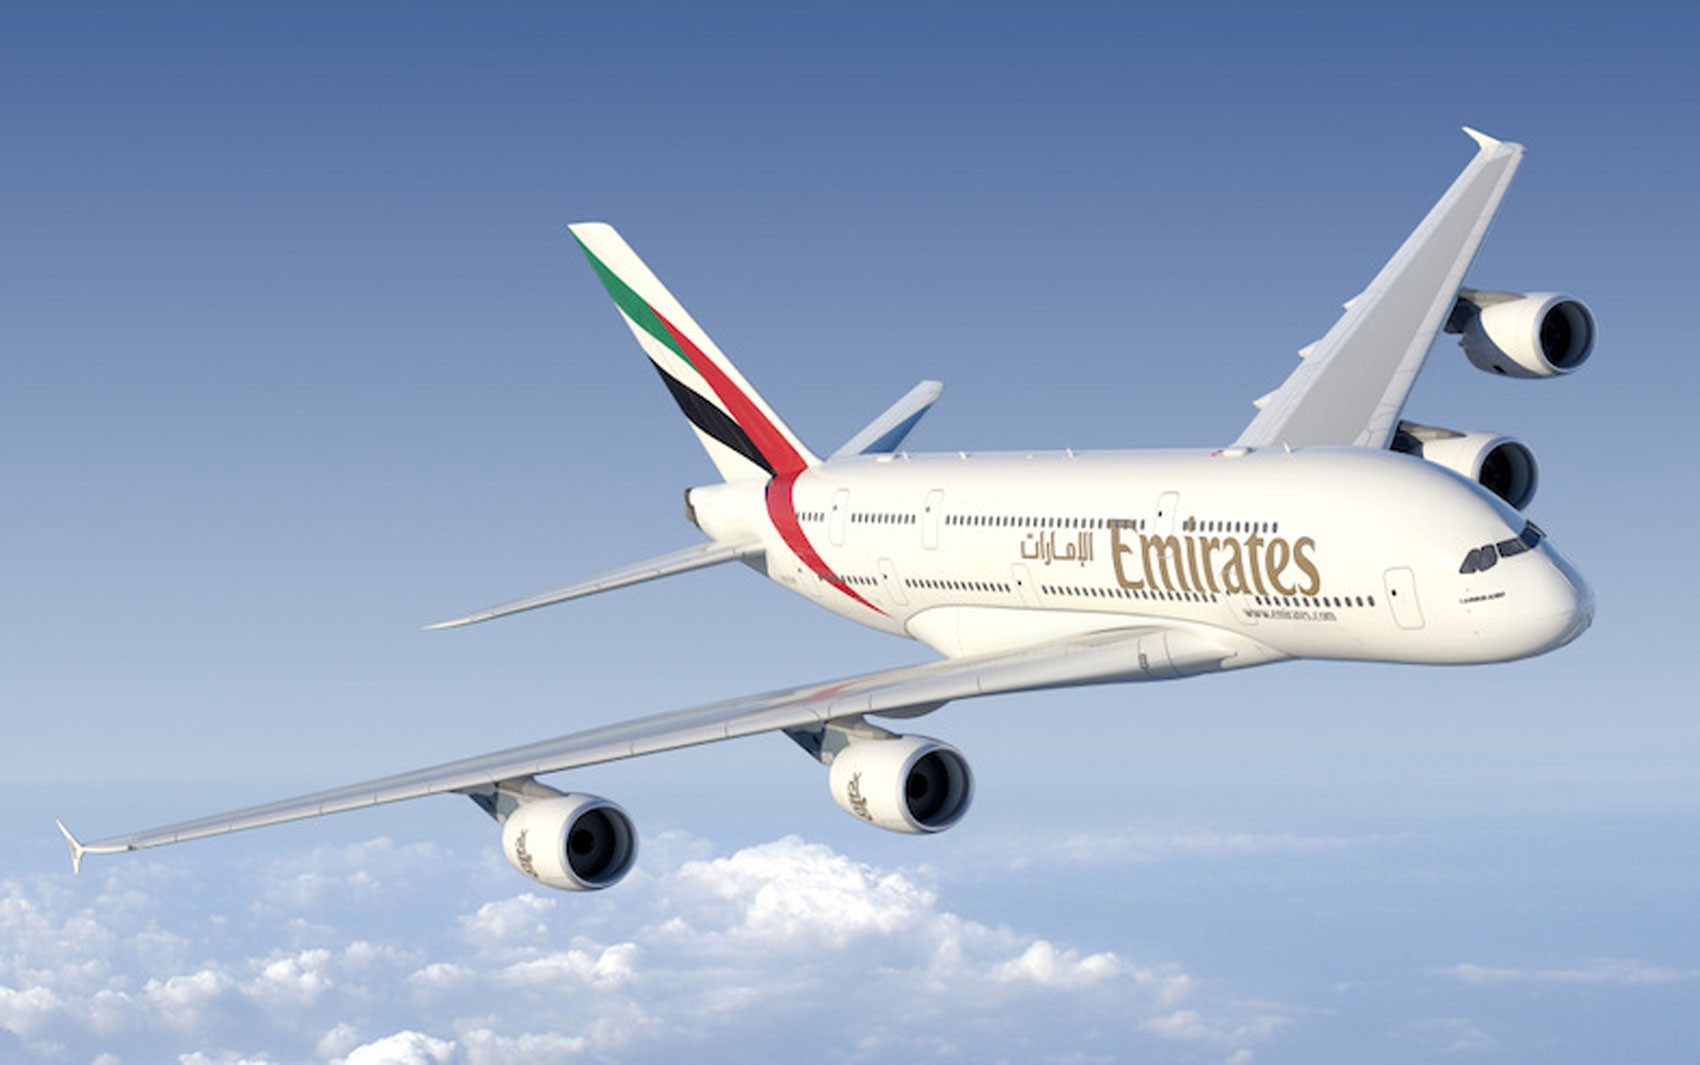 Maior avião comercial do mundo, A380 vai fazer rota diária ... - Globo.com